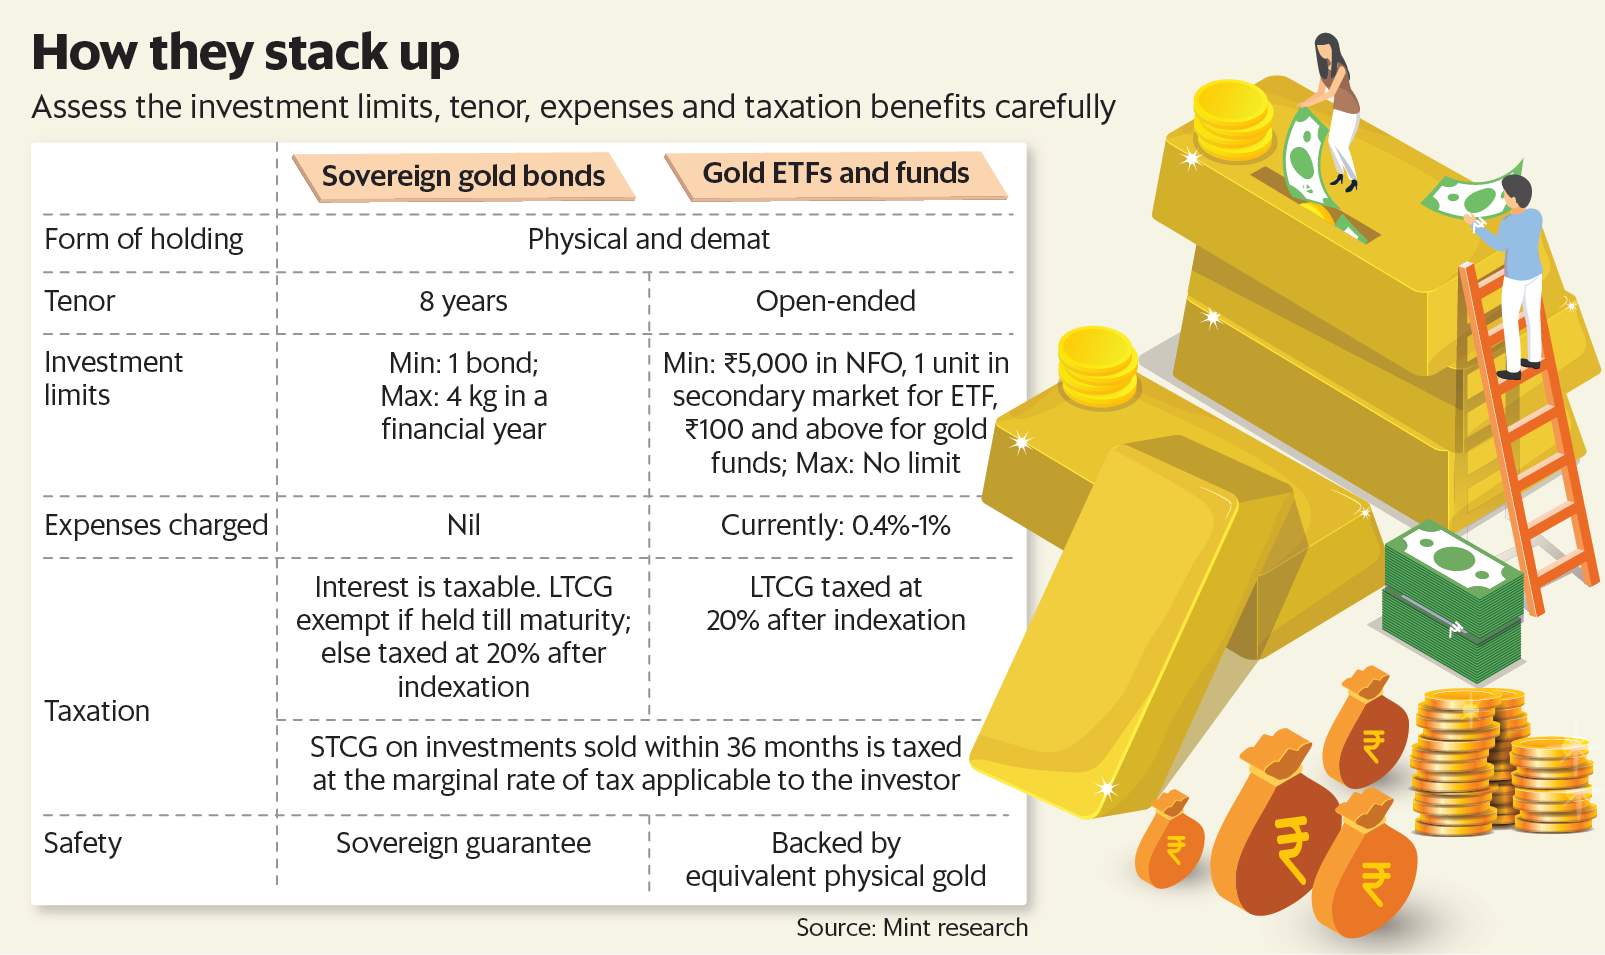 黄金ETF和基金是开放式计划。没有固定的期限，可以随时赎回